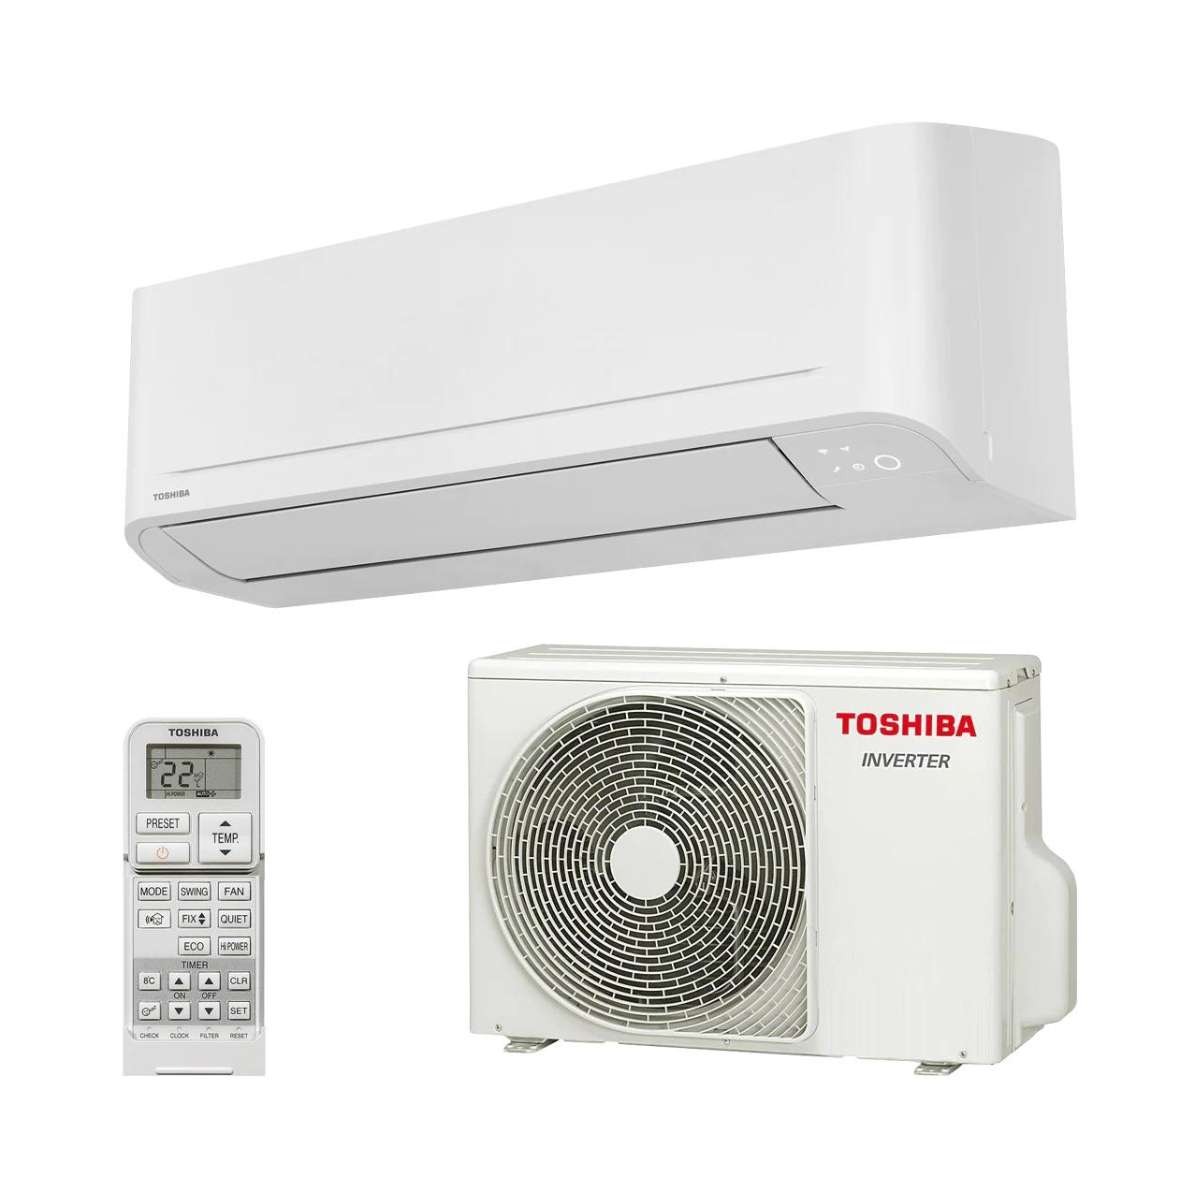 Split klimaanlage Toshiba Seiya+ 24 6,5 kW 22000 BTU mit der Referenz SEIYA+ 24 von der Marke TOSHIBA